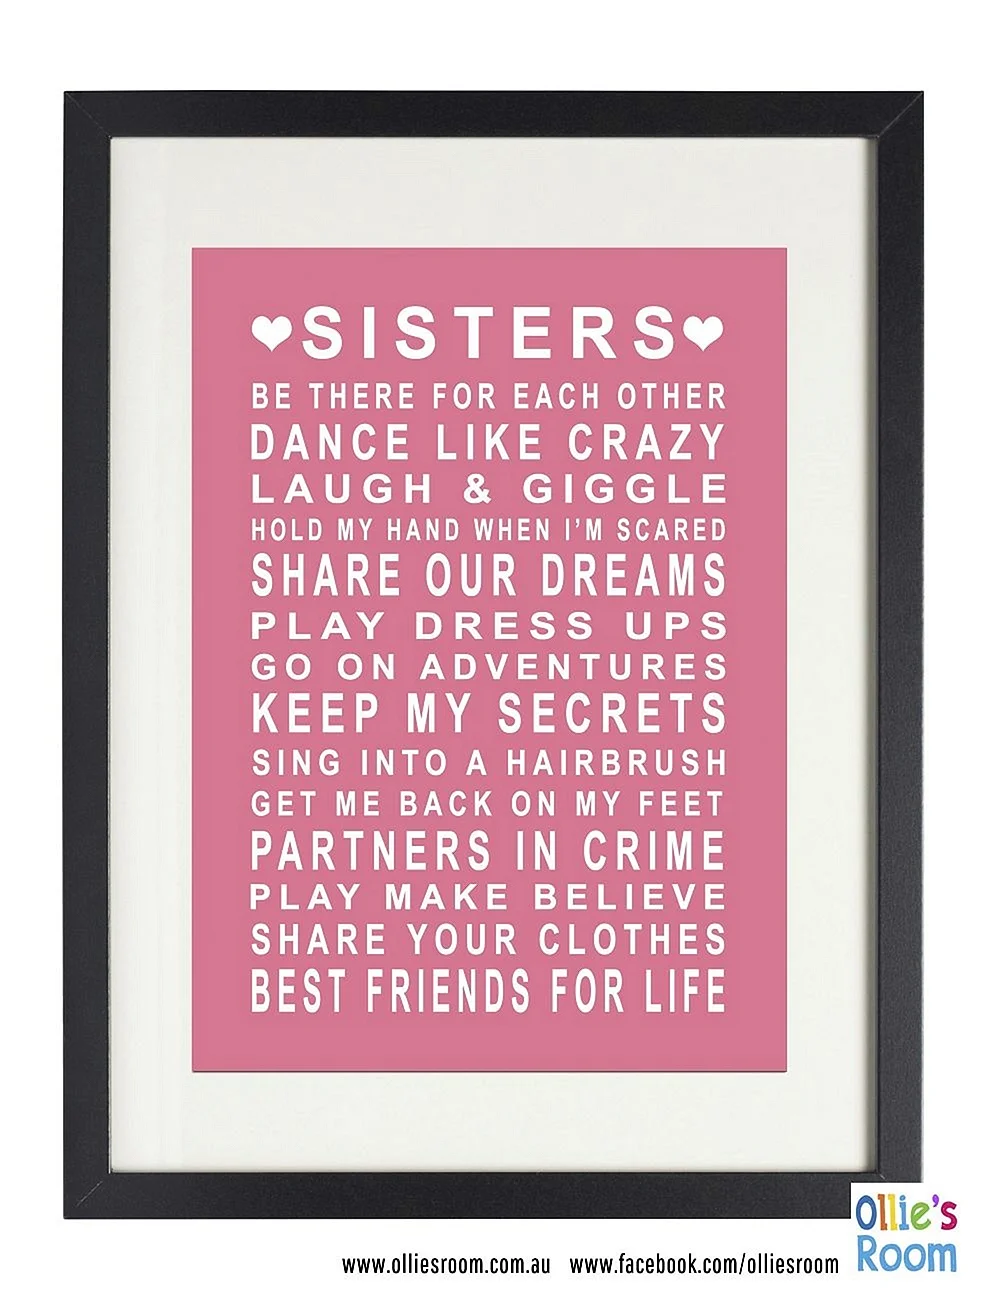 Правила сестры